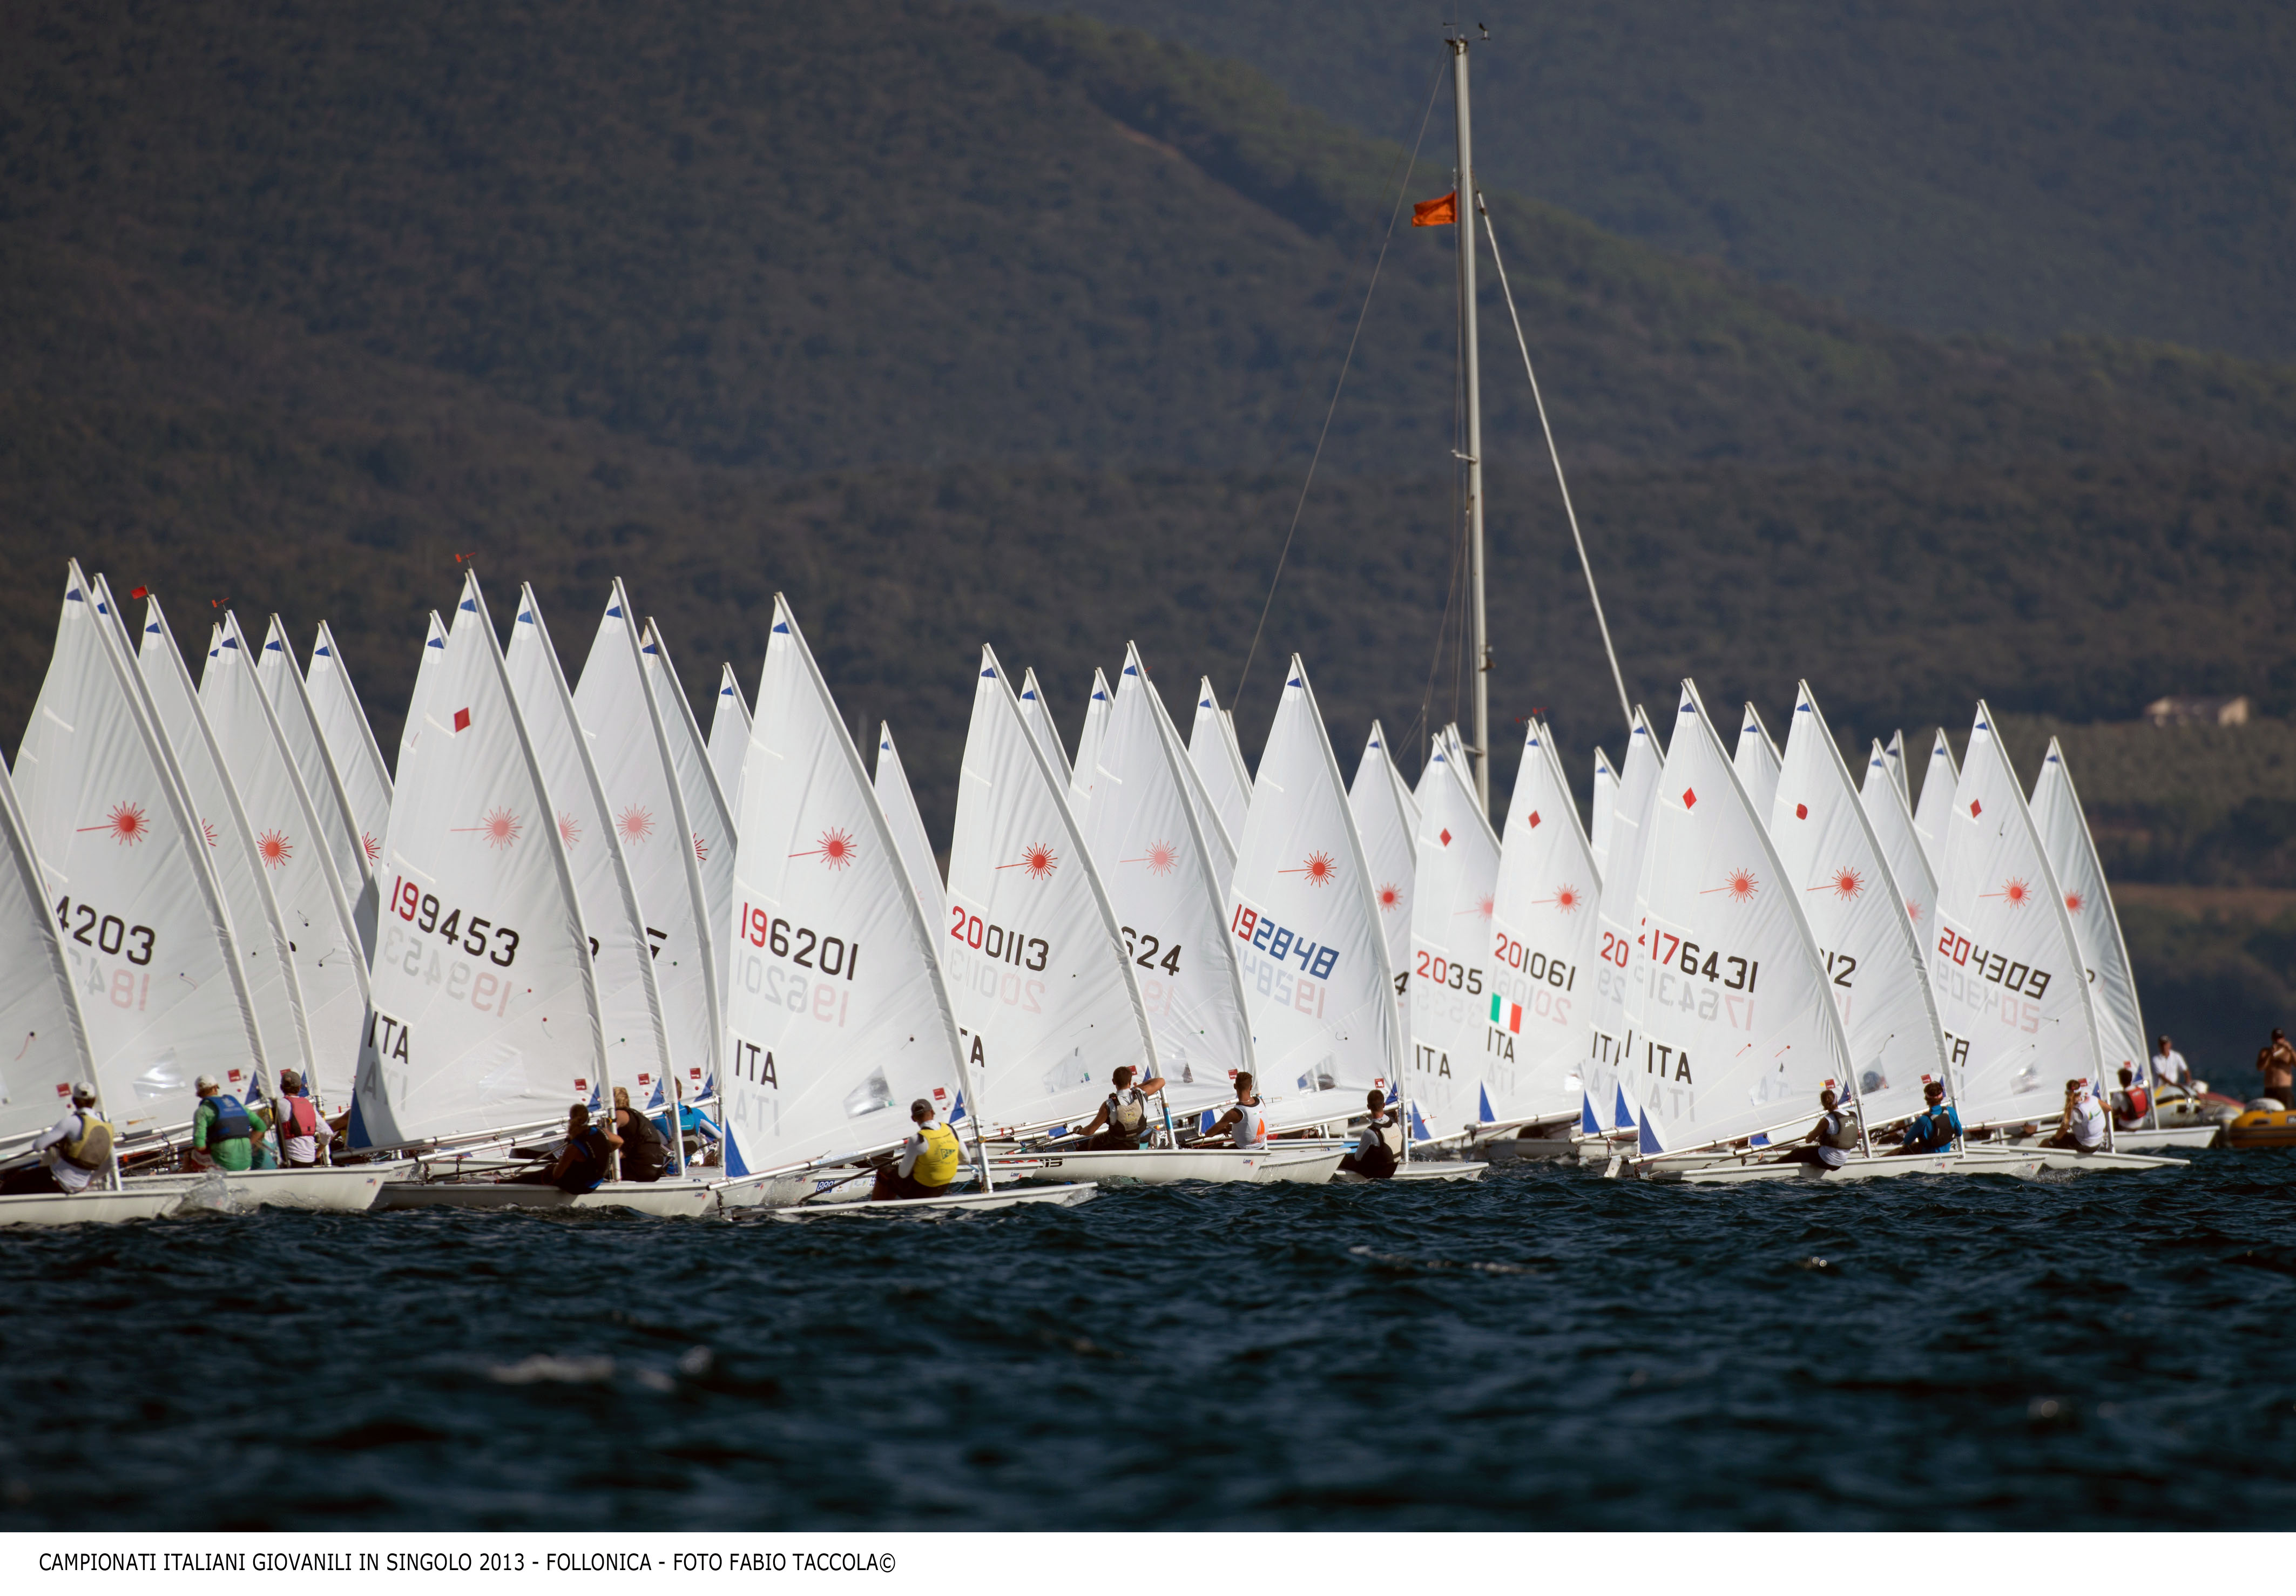 Campionati nazionali giovanili di Vela. Foto Fabio Taccola